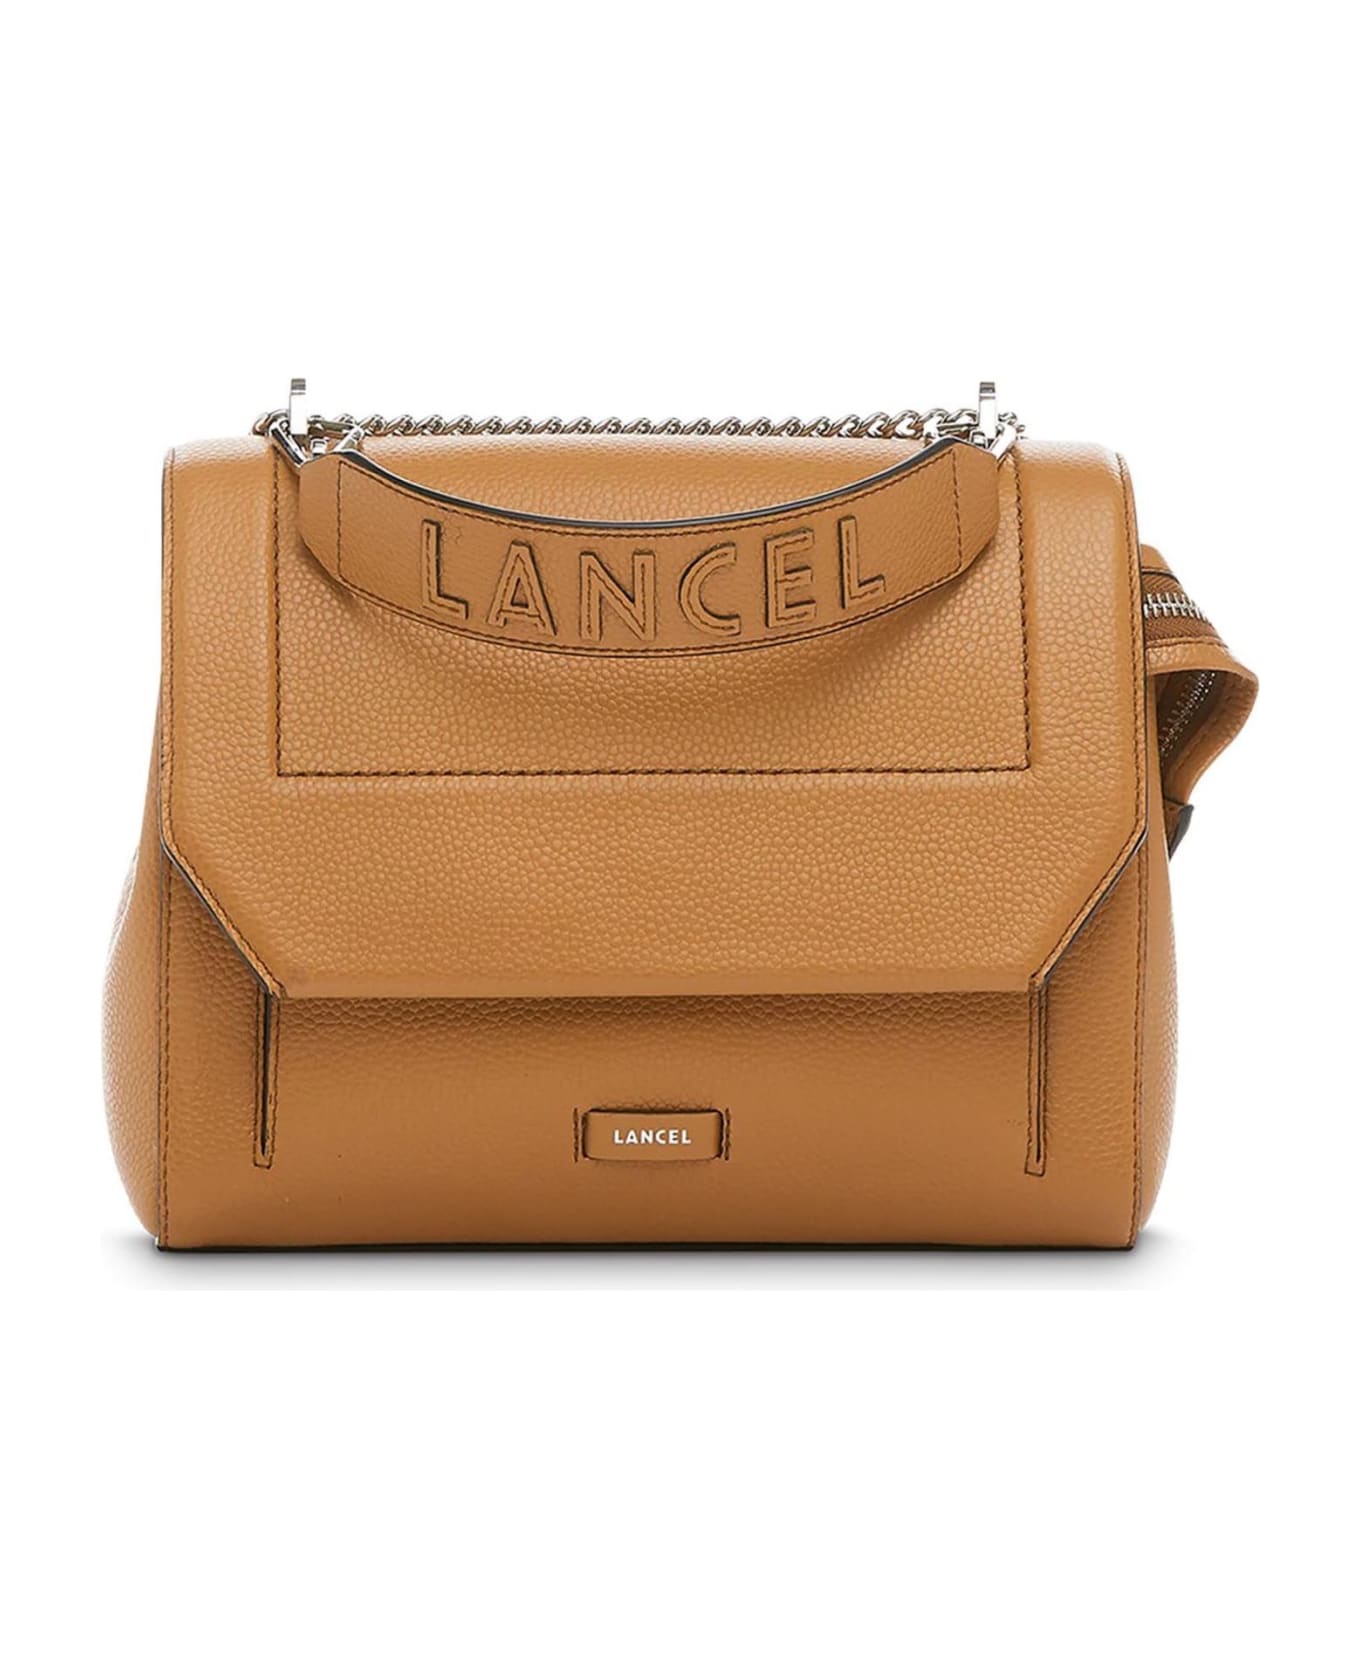 Lancel Camel Grained Leather Shoulder Bag - Beige